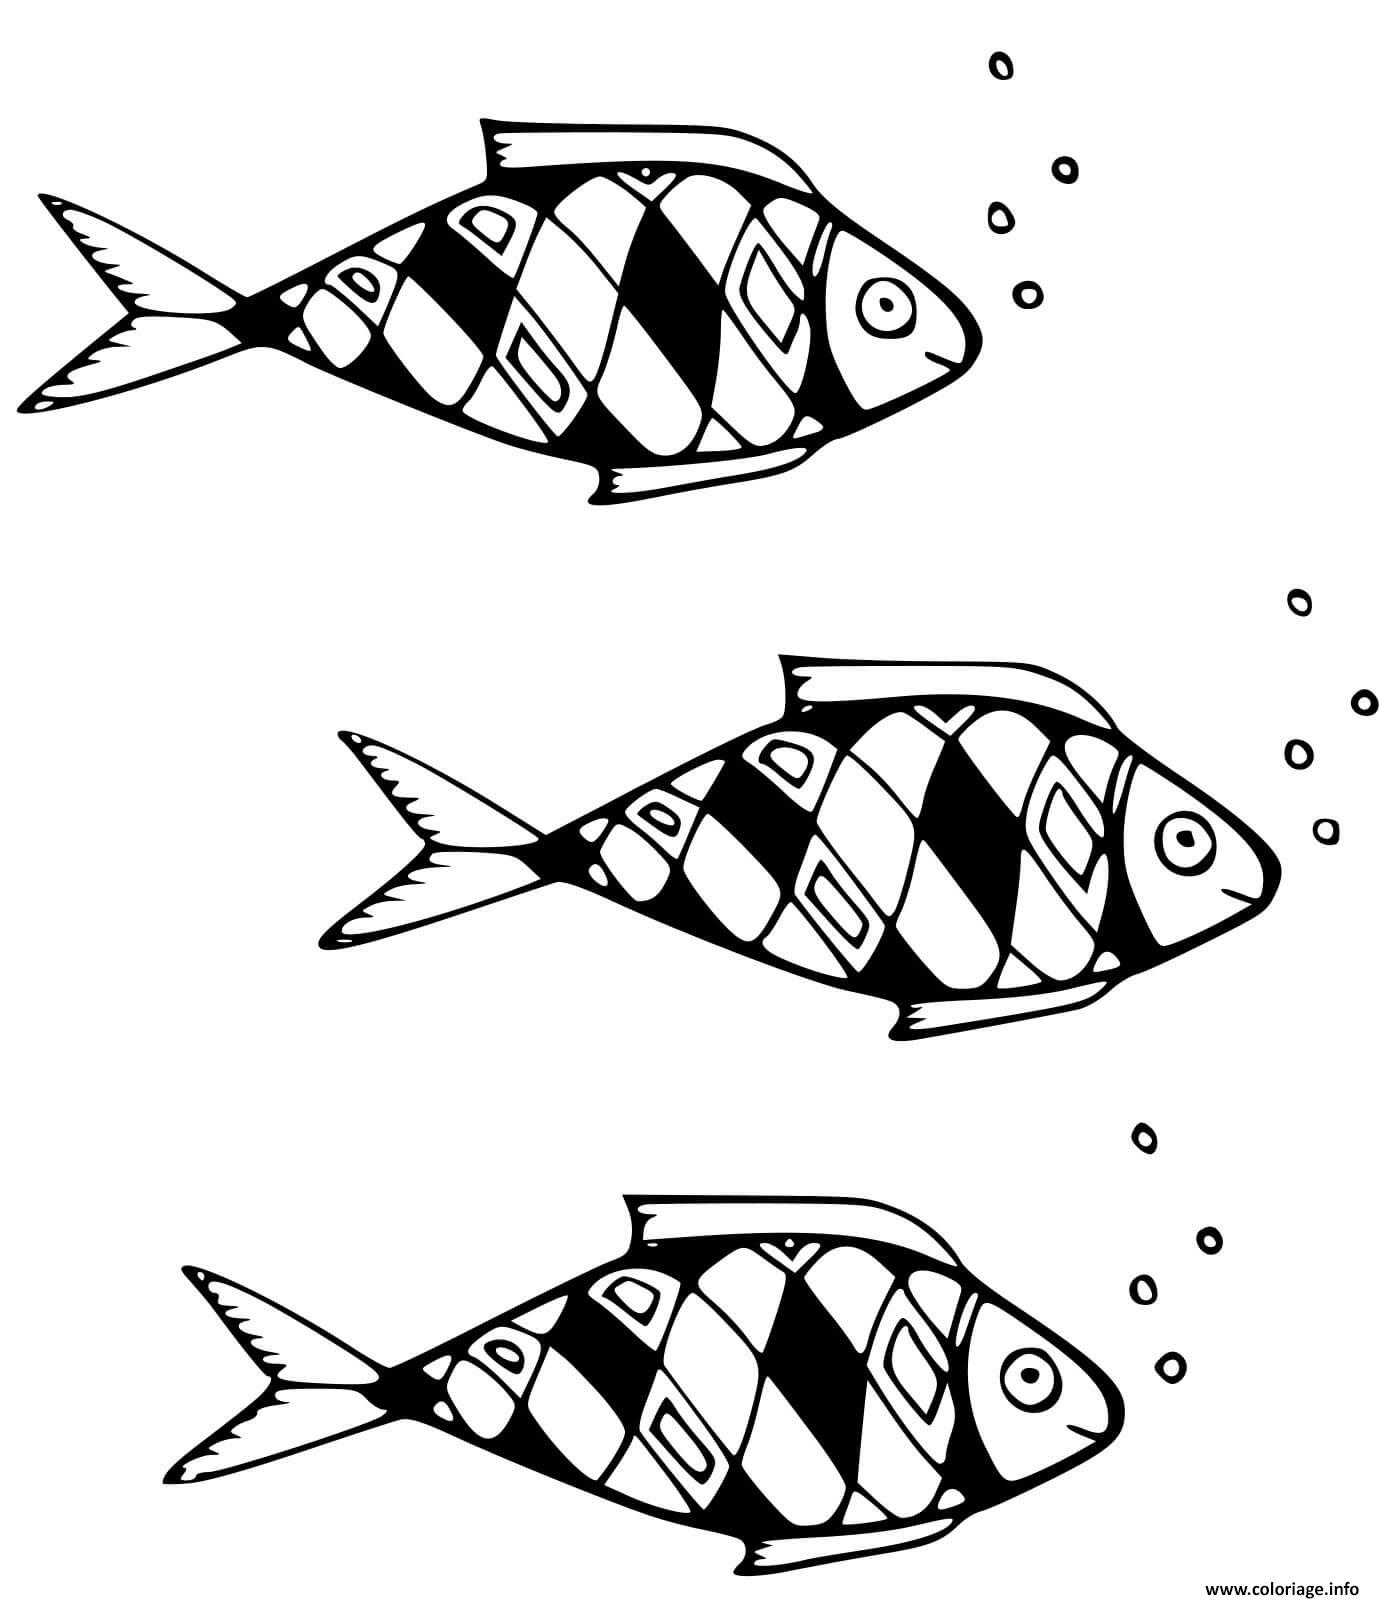 Dessin poisson Acanthomorphes a rayons epineux Coloriage Gratuit à Imprimer